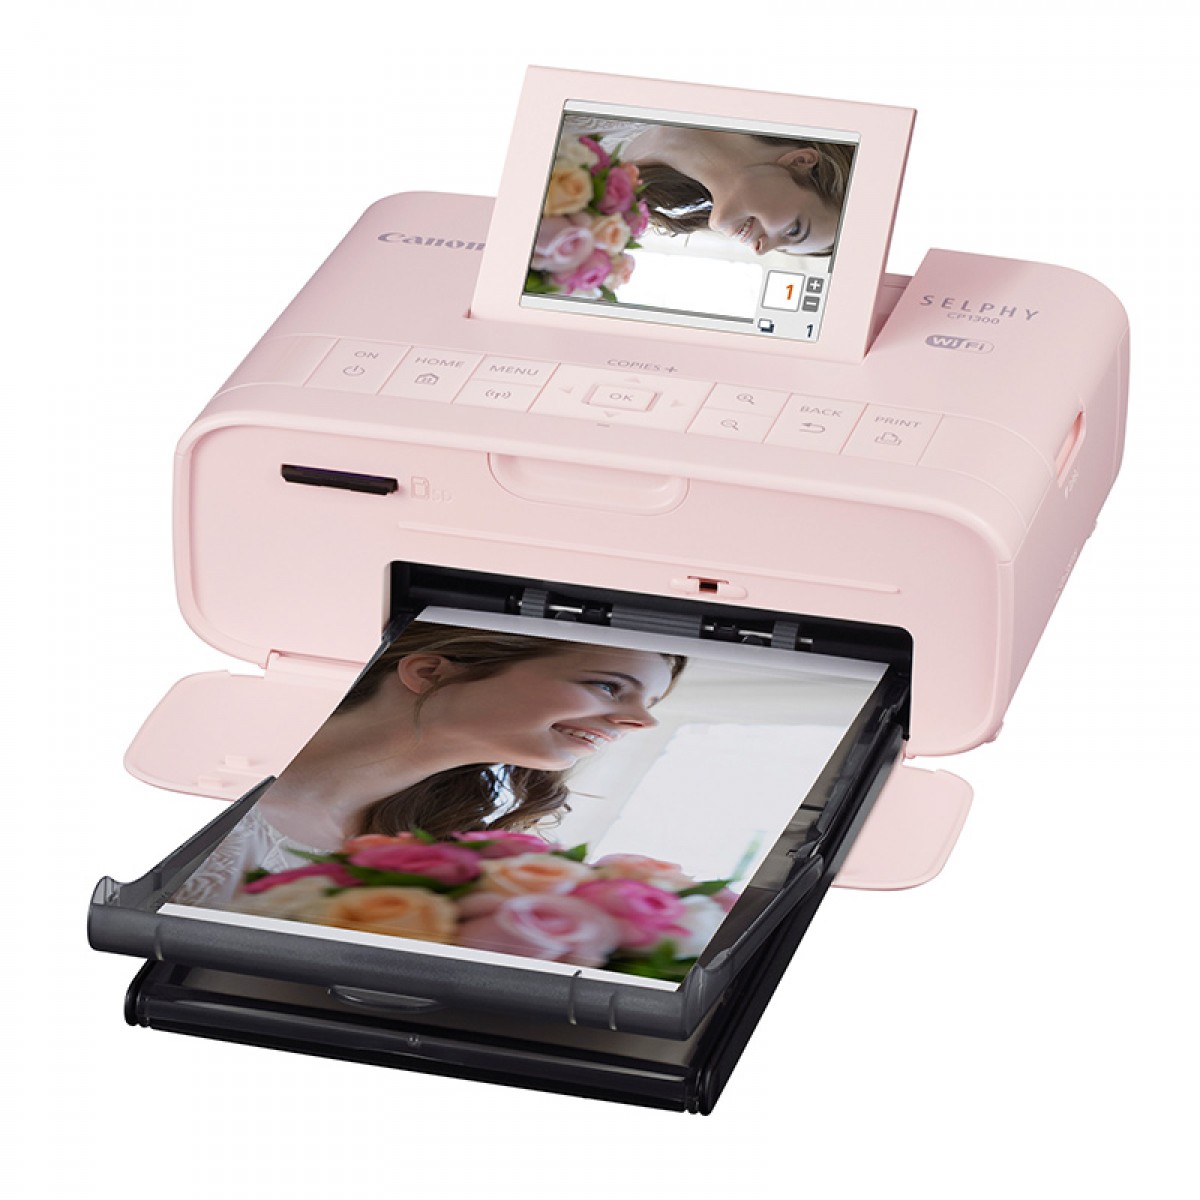 佳能CP1300热升华照片打印机 无线WIFI手机打印 小型家用便携迷你彩色相片冲印手账相机打印 包教包会 不褪色